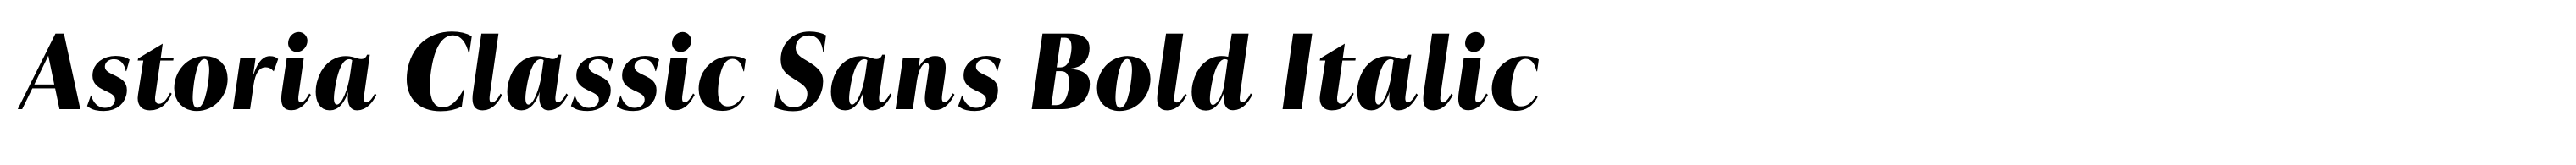 Astoria Classic Sans Bold Italic